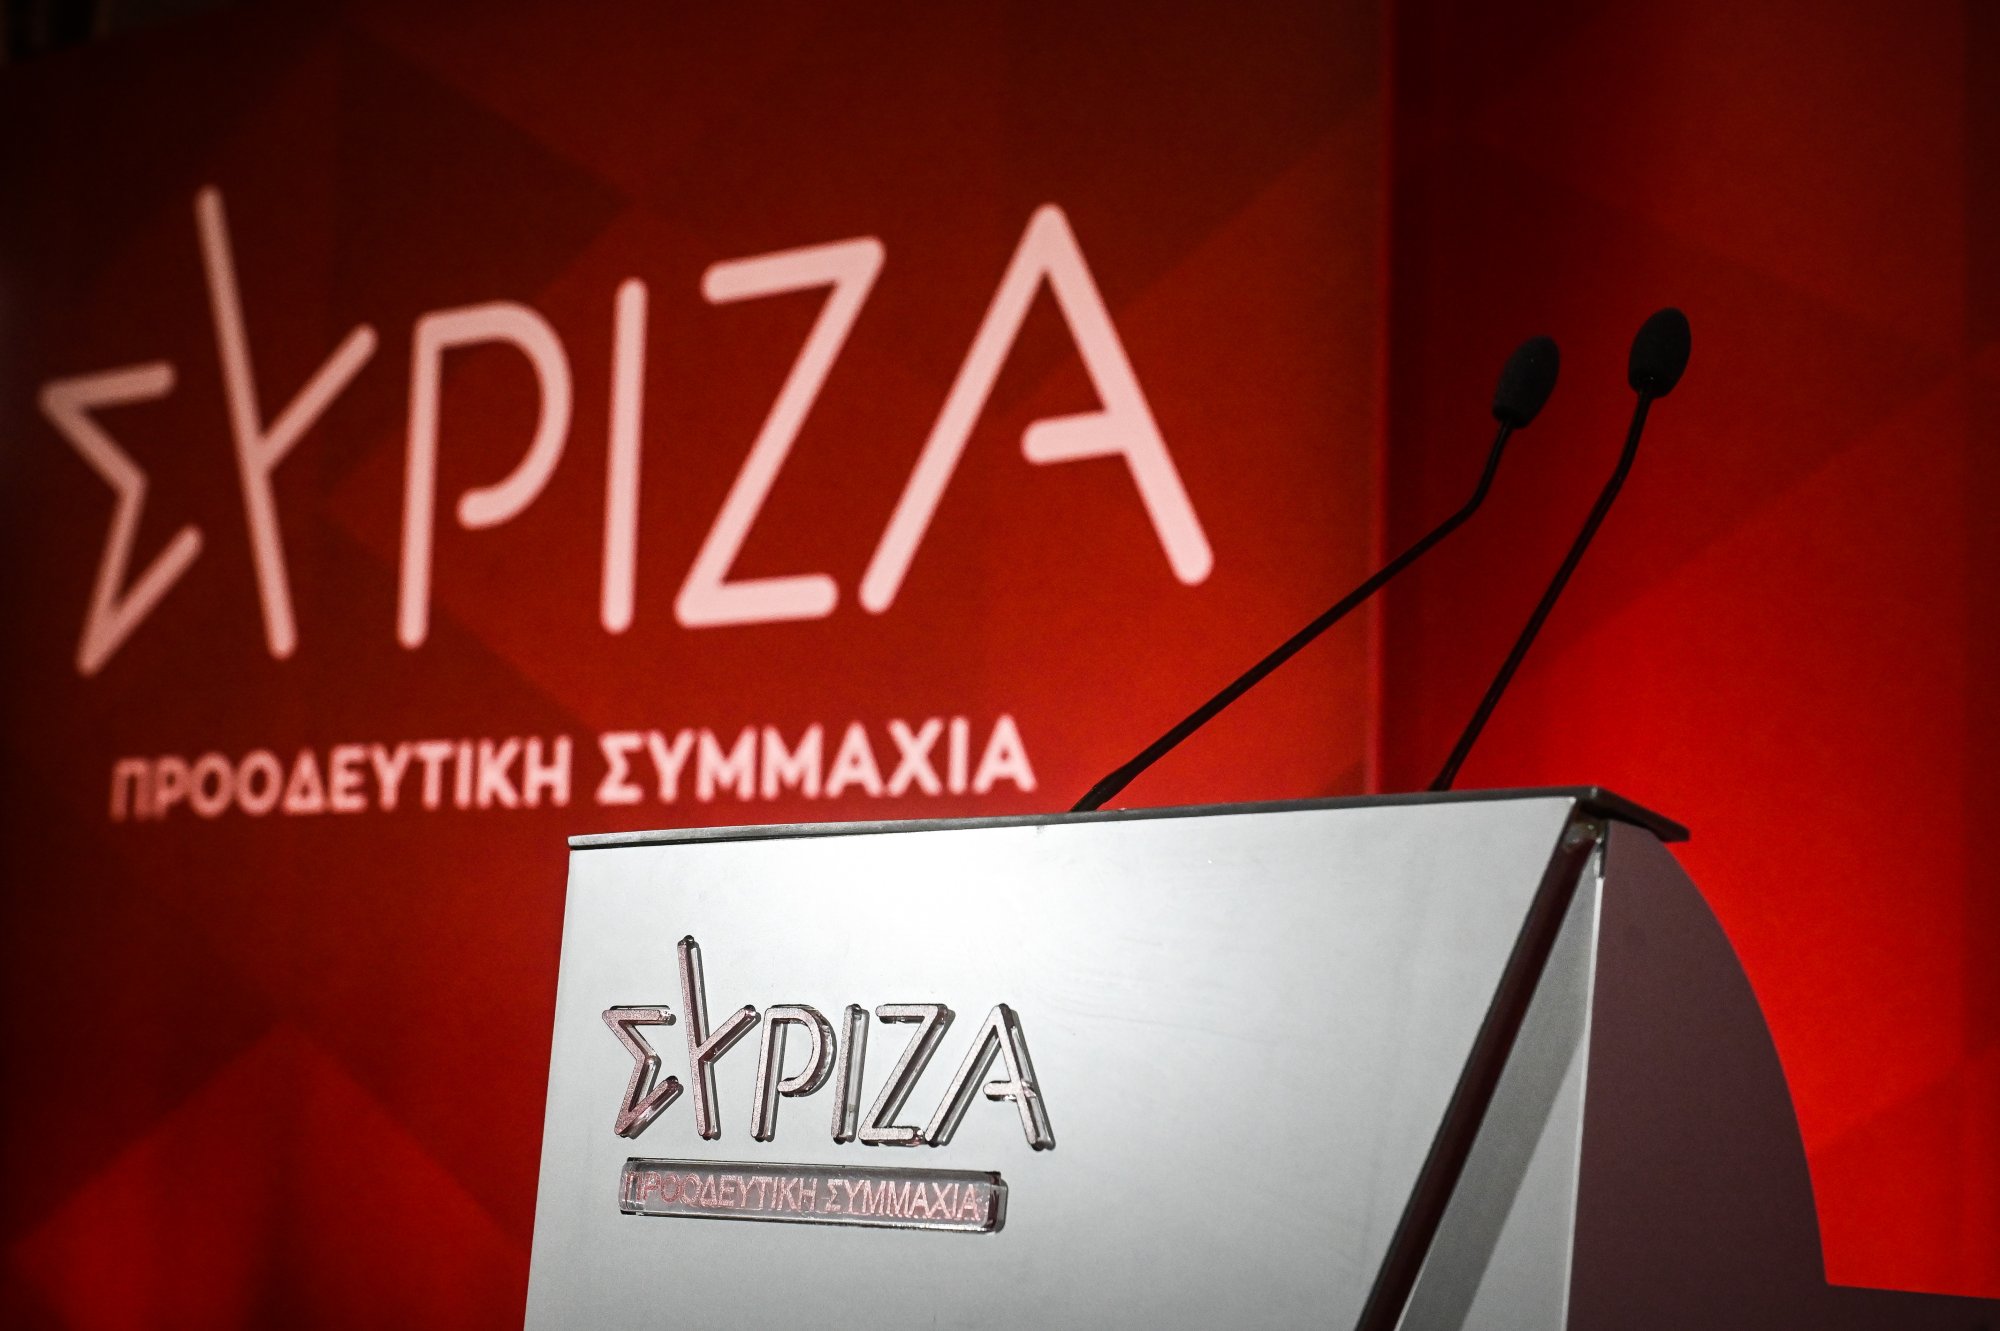 ΣΥΡΙΖΑ: Ο Ανδρουλάκης συνεχίζει να μιλάει μονότονα και βαρετά - Προσβάλλει τους προοδευτικούς ψηφοφόρους